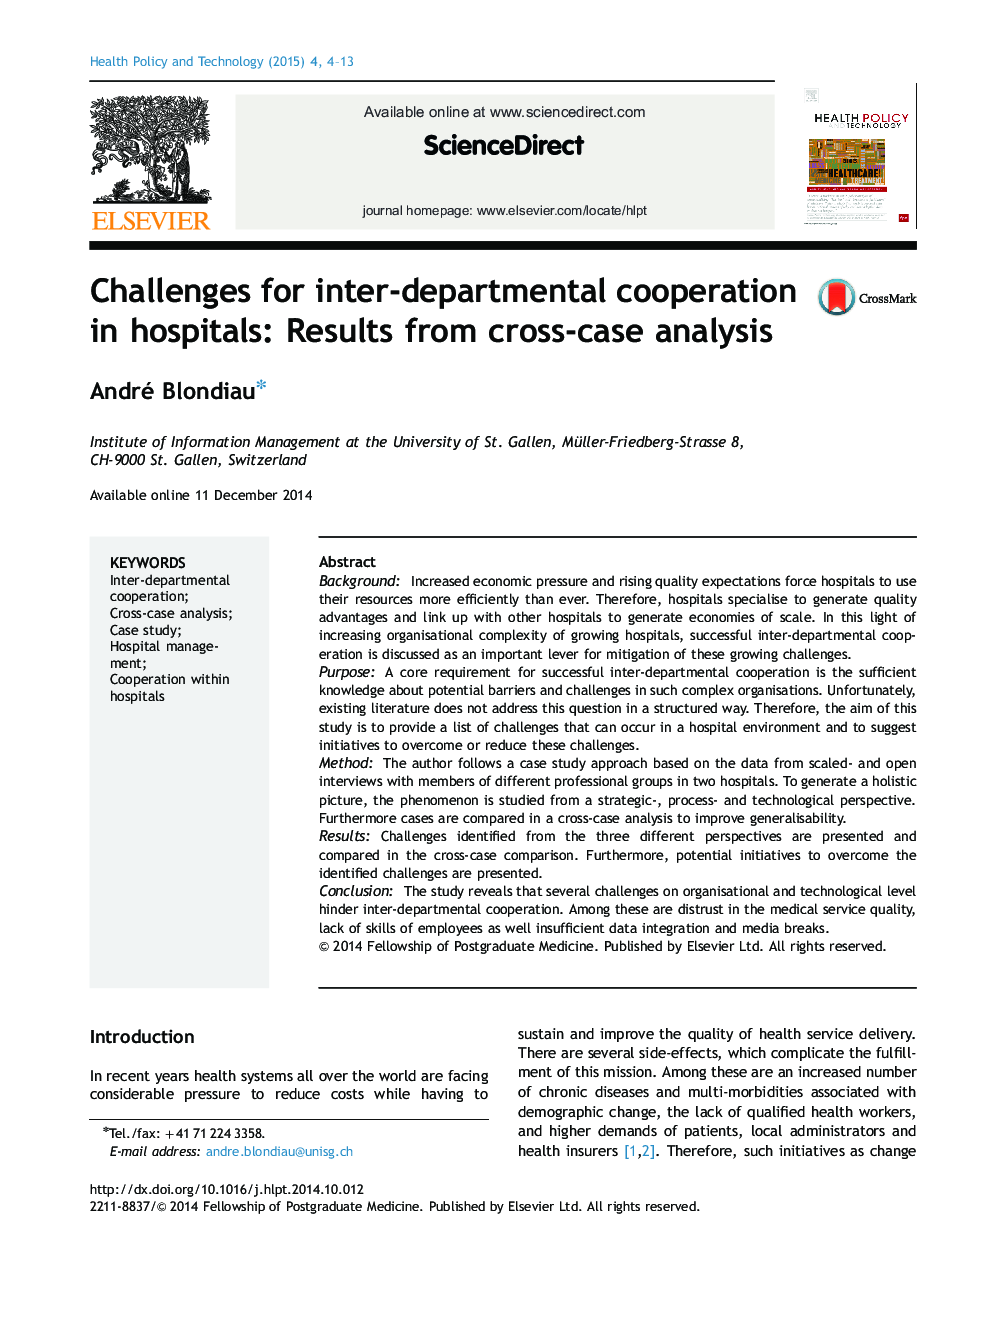 چالش ها برای همکاری درون بخشی در بیمارستان: نمایش نتایج از تجزیه و تحلیل مورد متقابل 